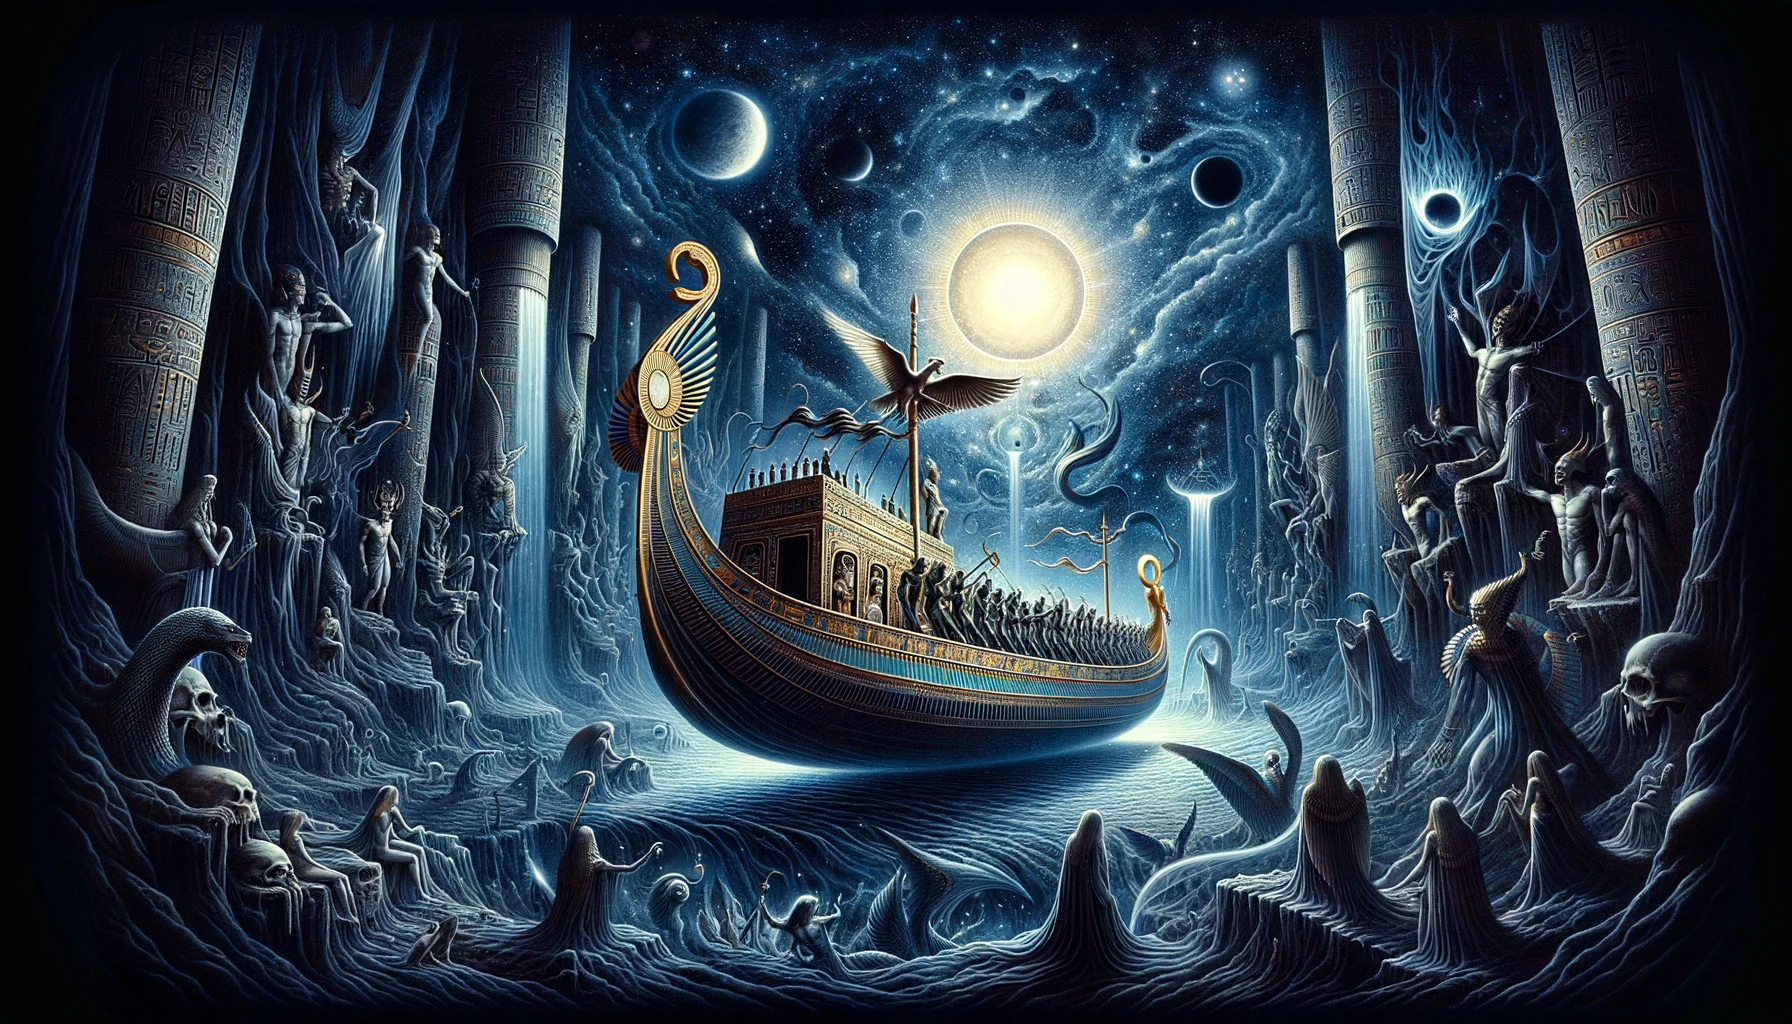 Navigare nell'eternità: Il viaggio notturno in barca nel mito egizio e il suo significato per la vita